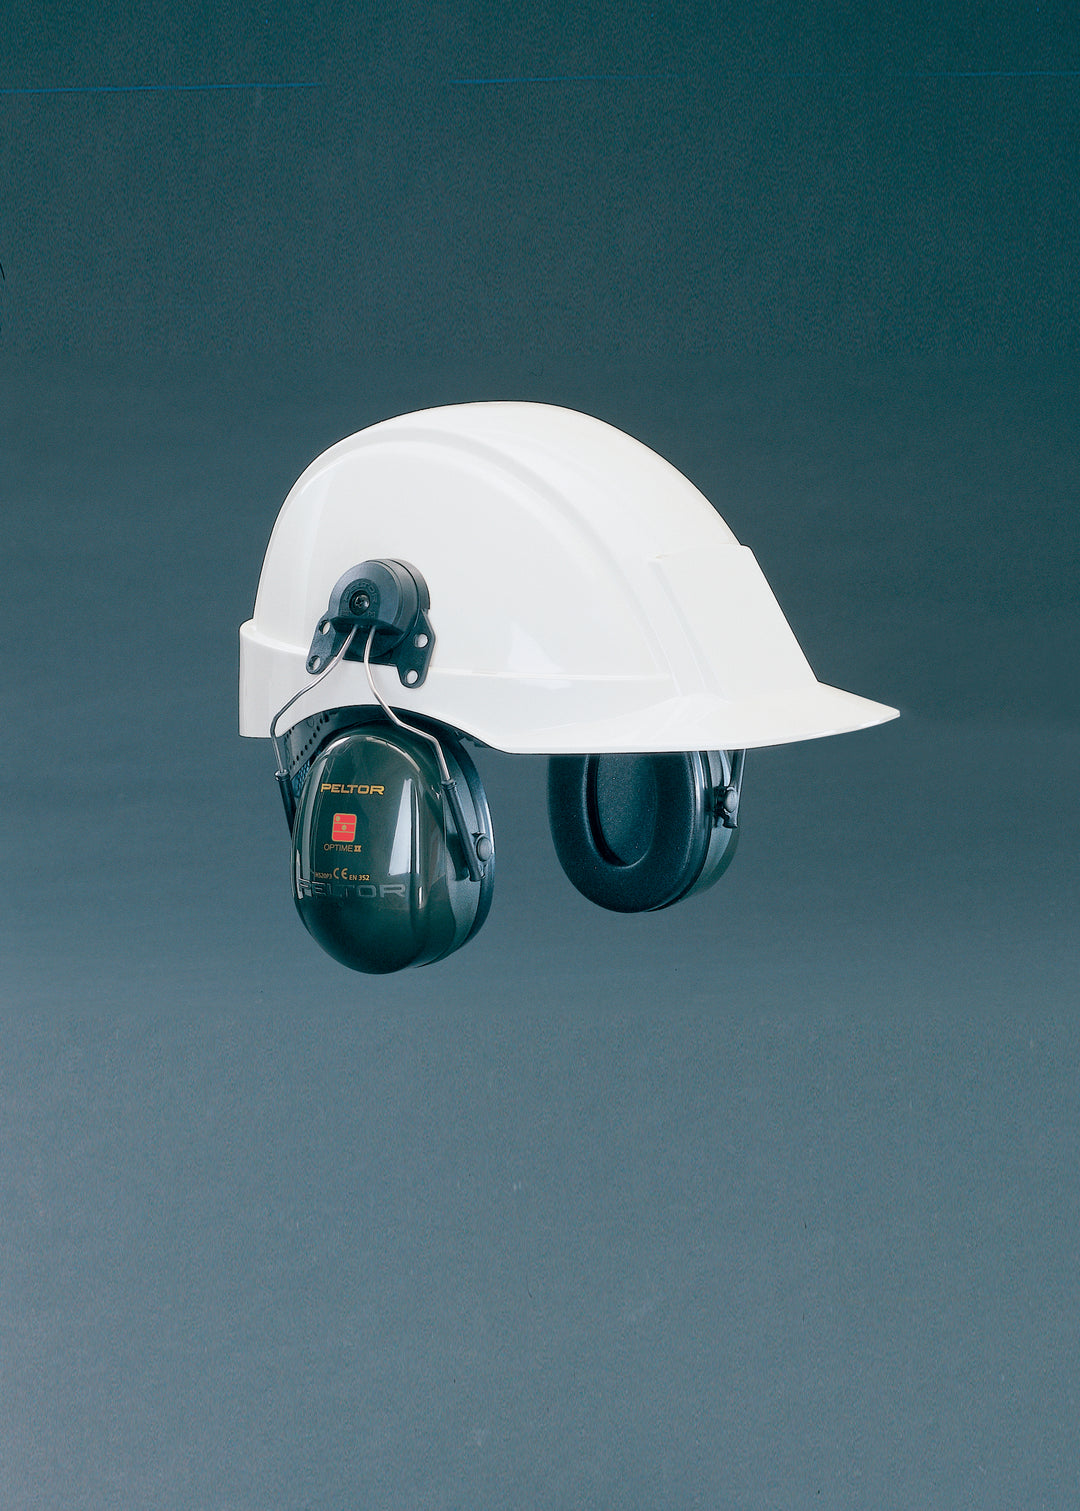 Hearing protector for helmet Peltor Optime ll